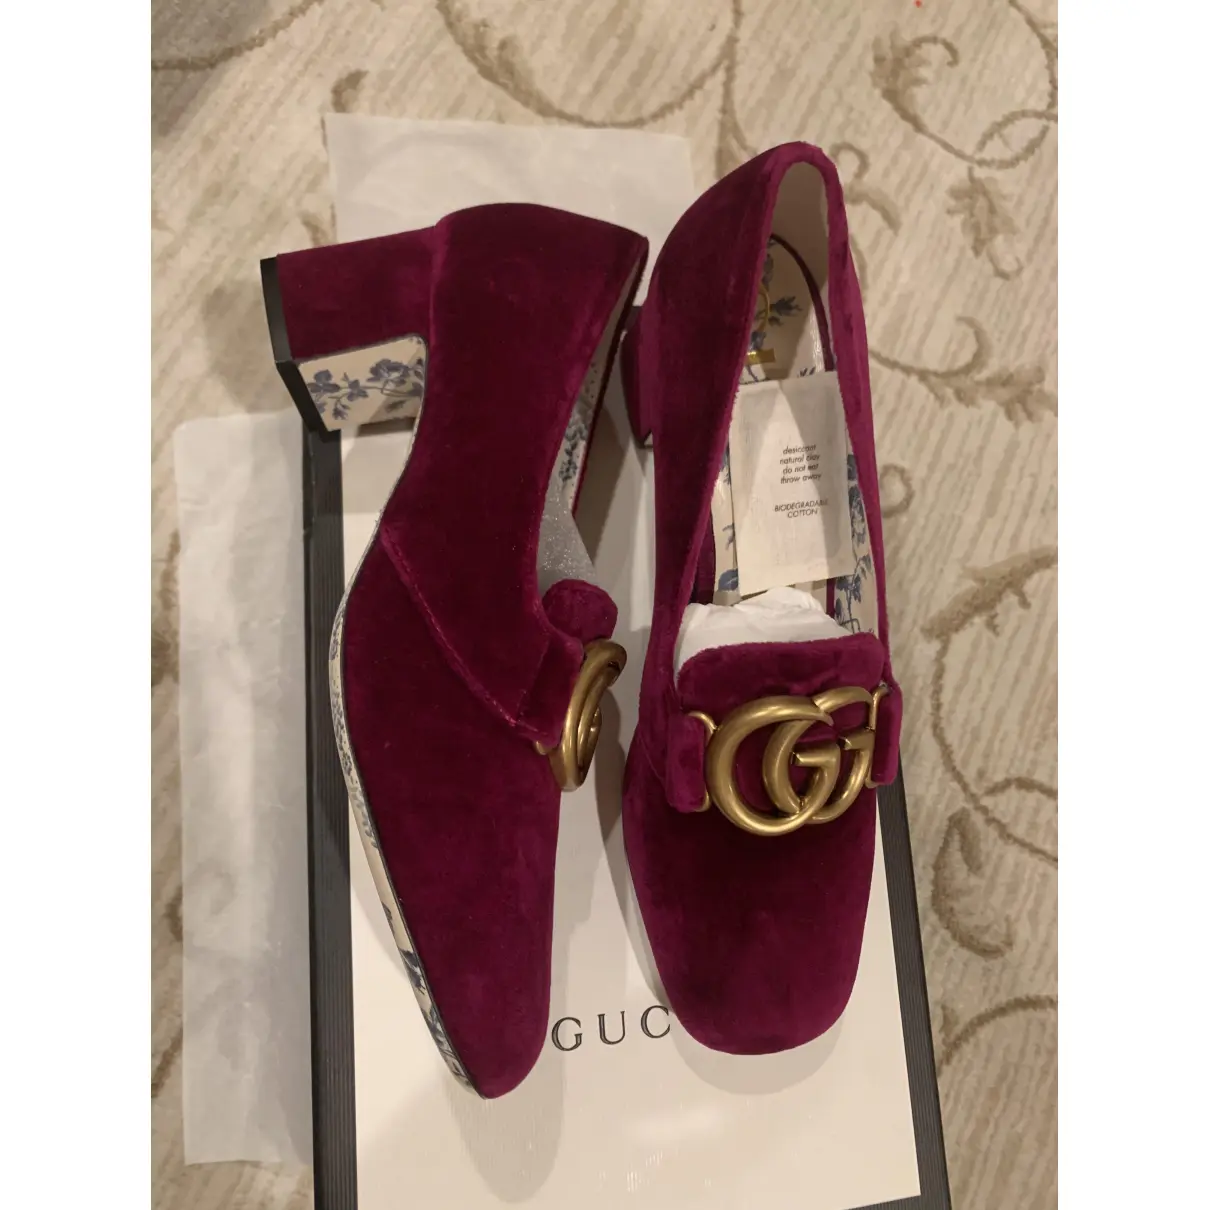 Buy Gucci Hannelore velvet heels online